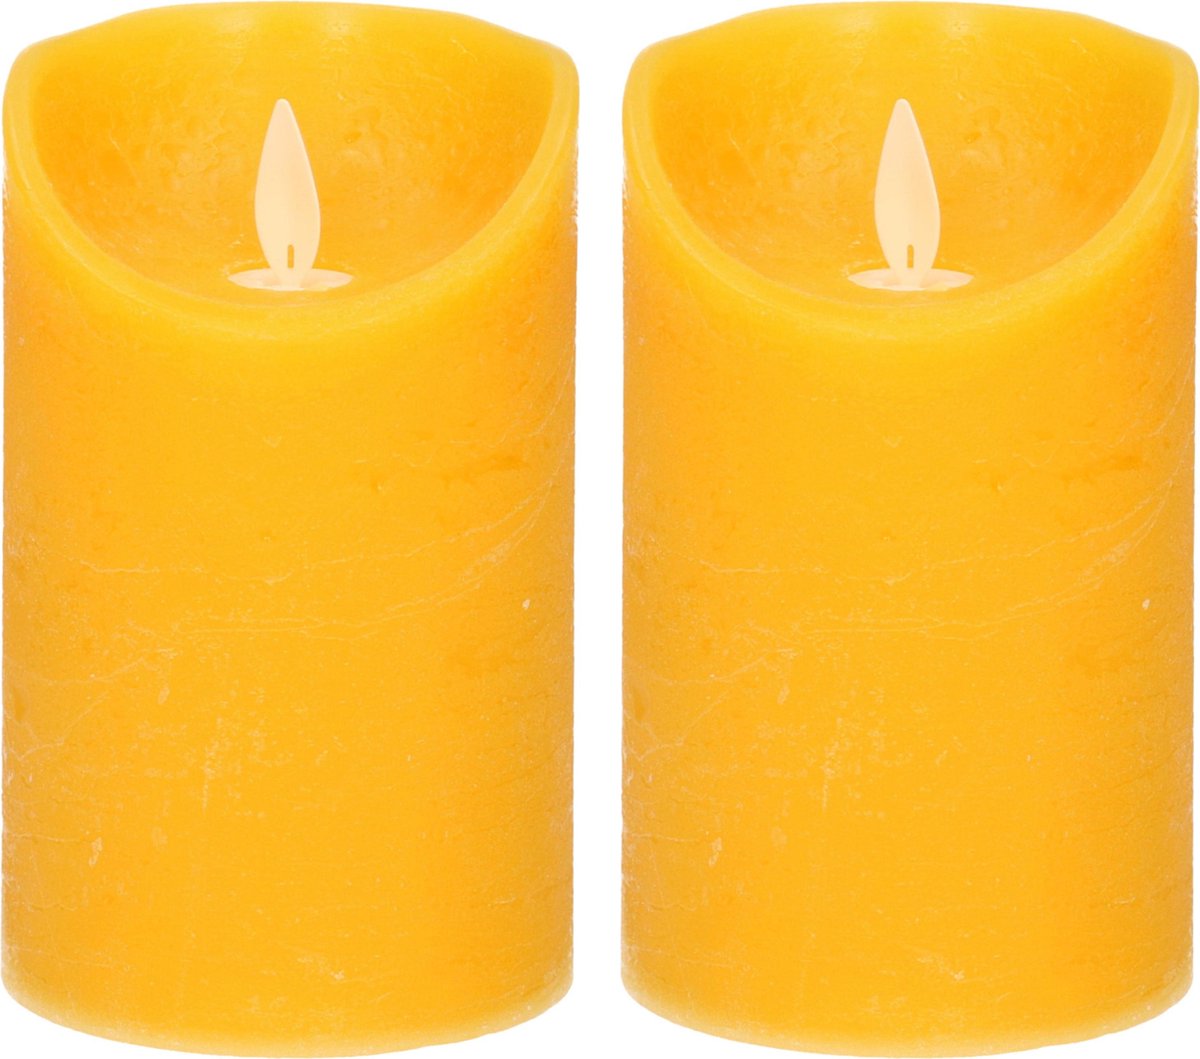 Anna's Collection 2x Oker gele LED kaarsen / stompkaarsen 12,5 cm - Luxe kaarsen op batterijen met bewegende vlam - Geel